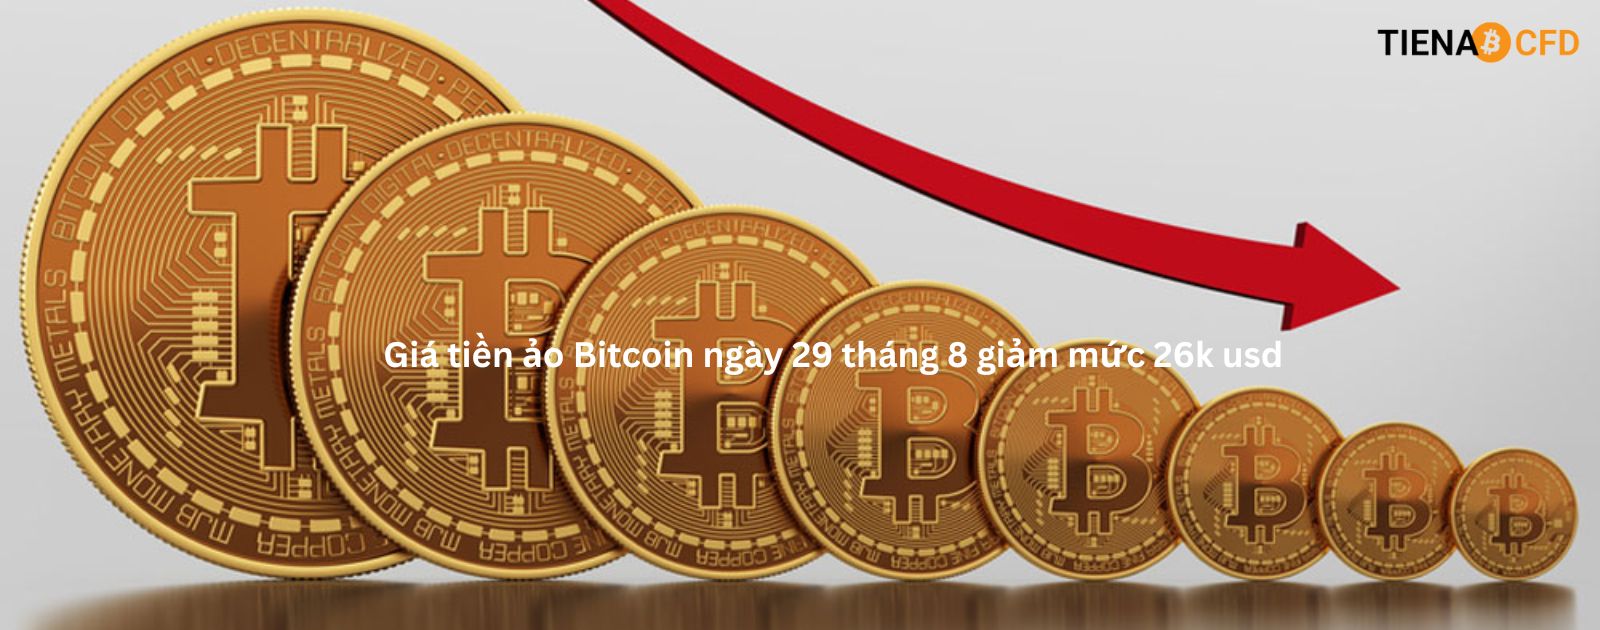 Giá tiền ảo Bitcoin ngày 29 tháng 8 giảm mức 26k usd